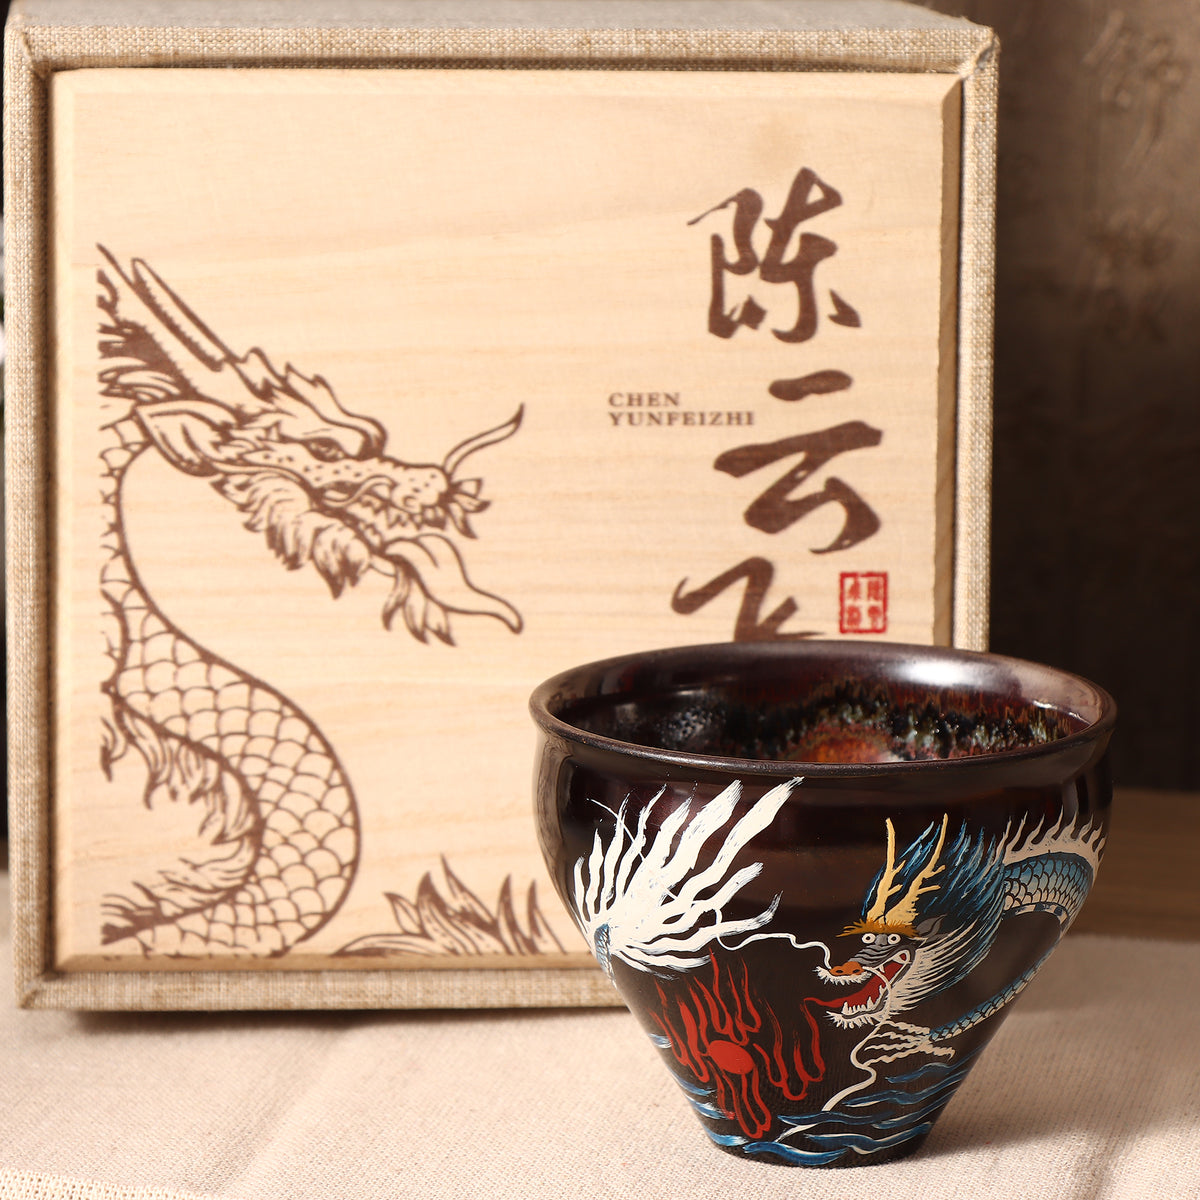 Chen yunfei Hand-painted Daqi teacup